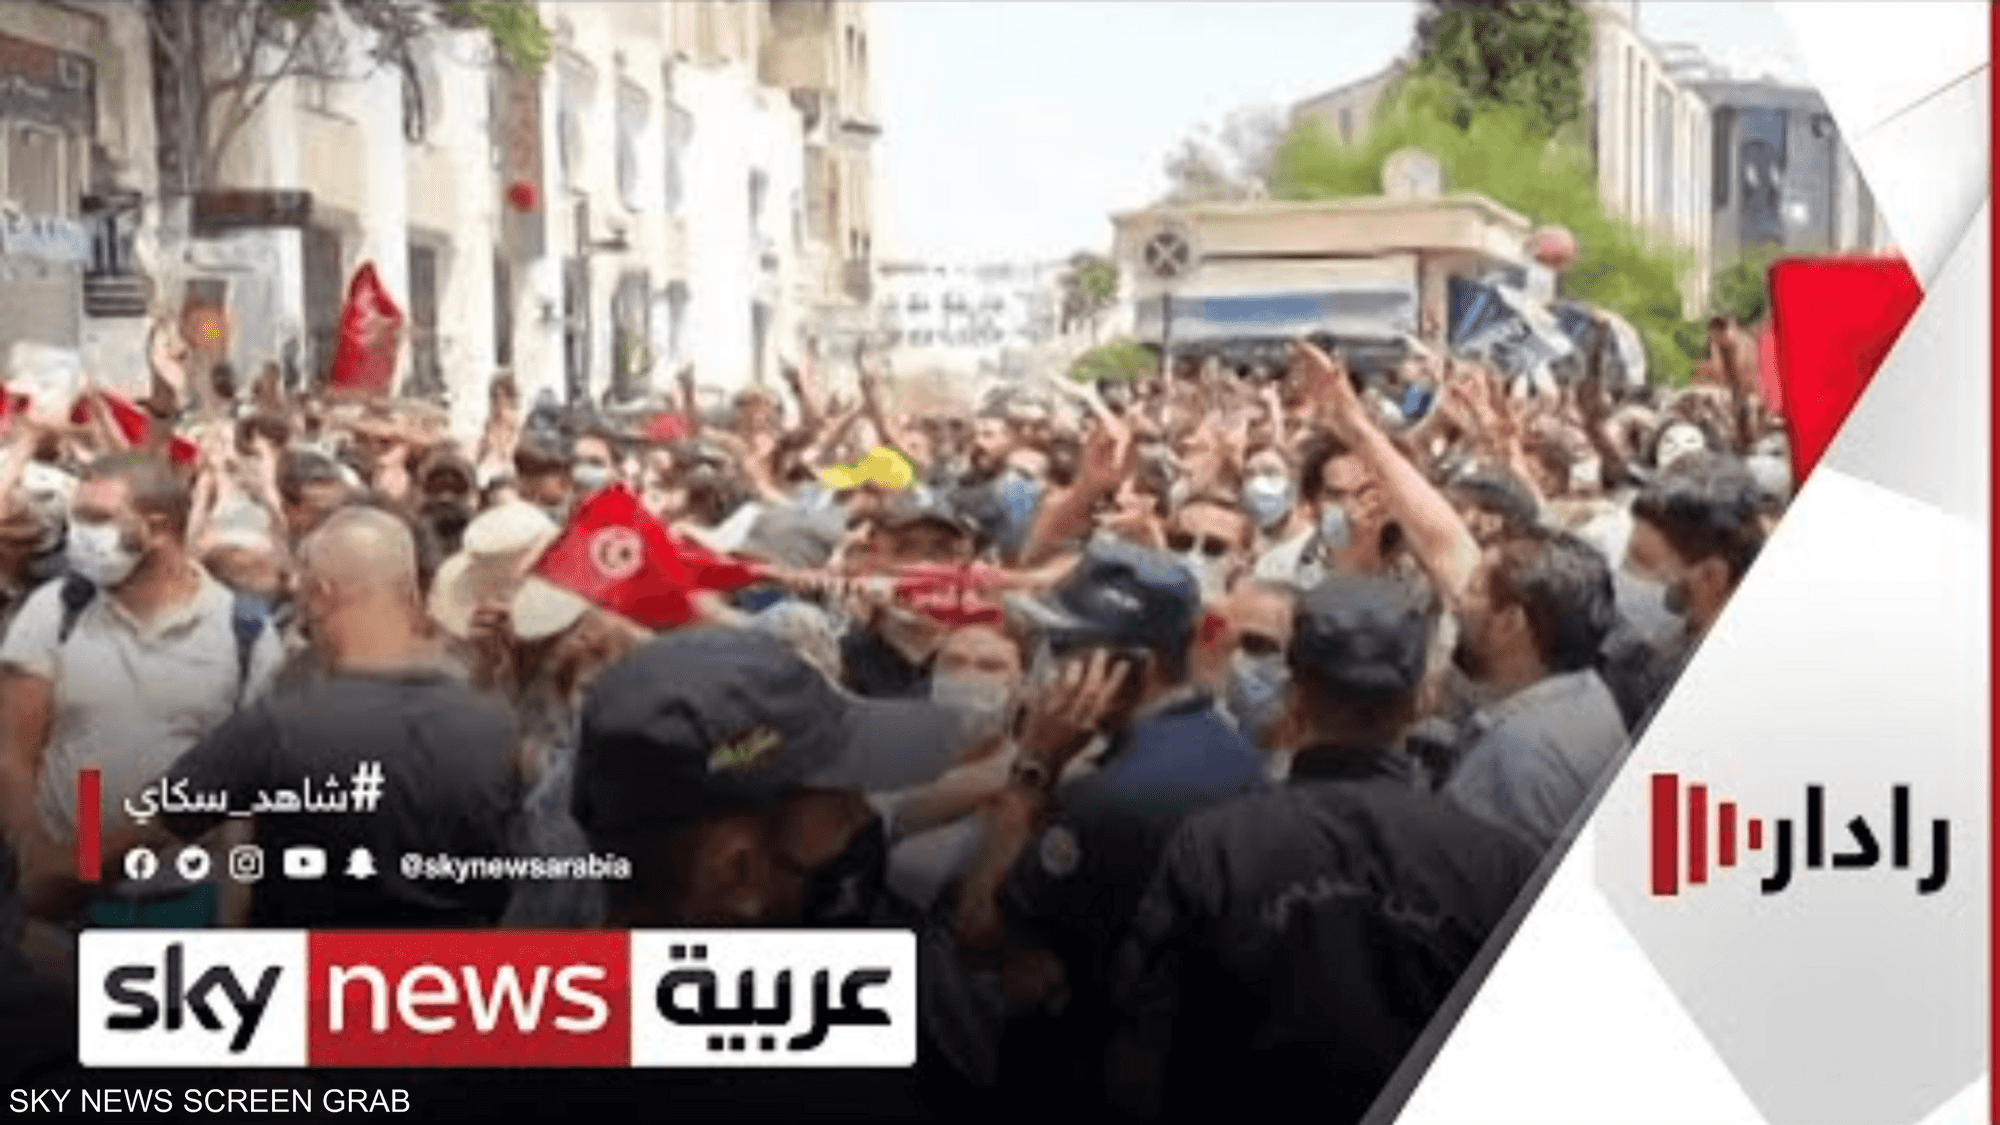 التونسيون يترقبون تلبية الحكومة لمطالبهم المعيشية